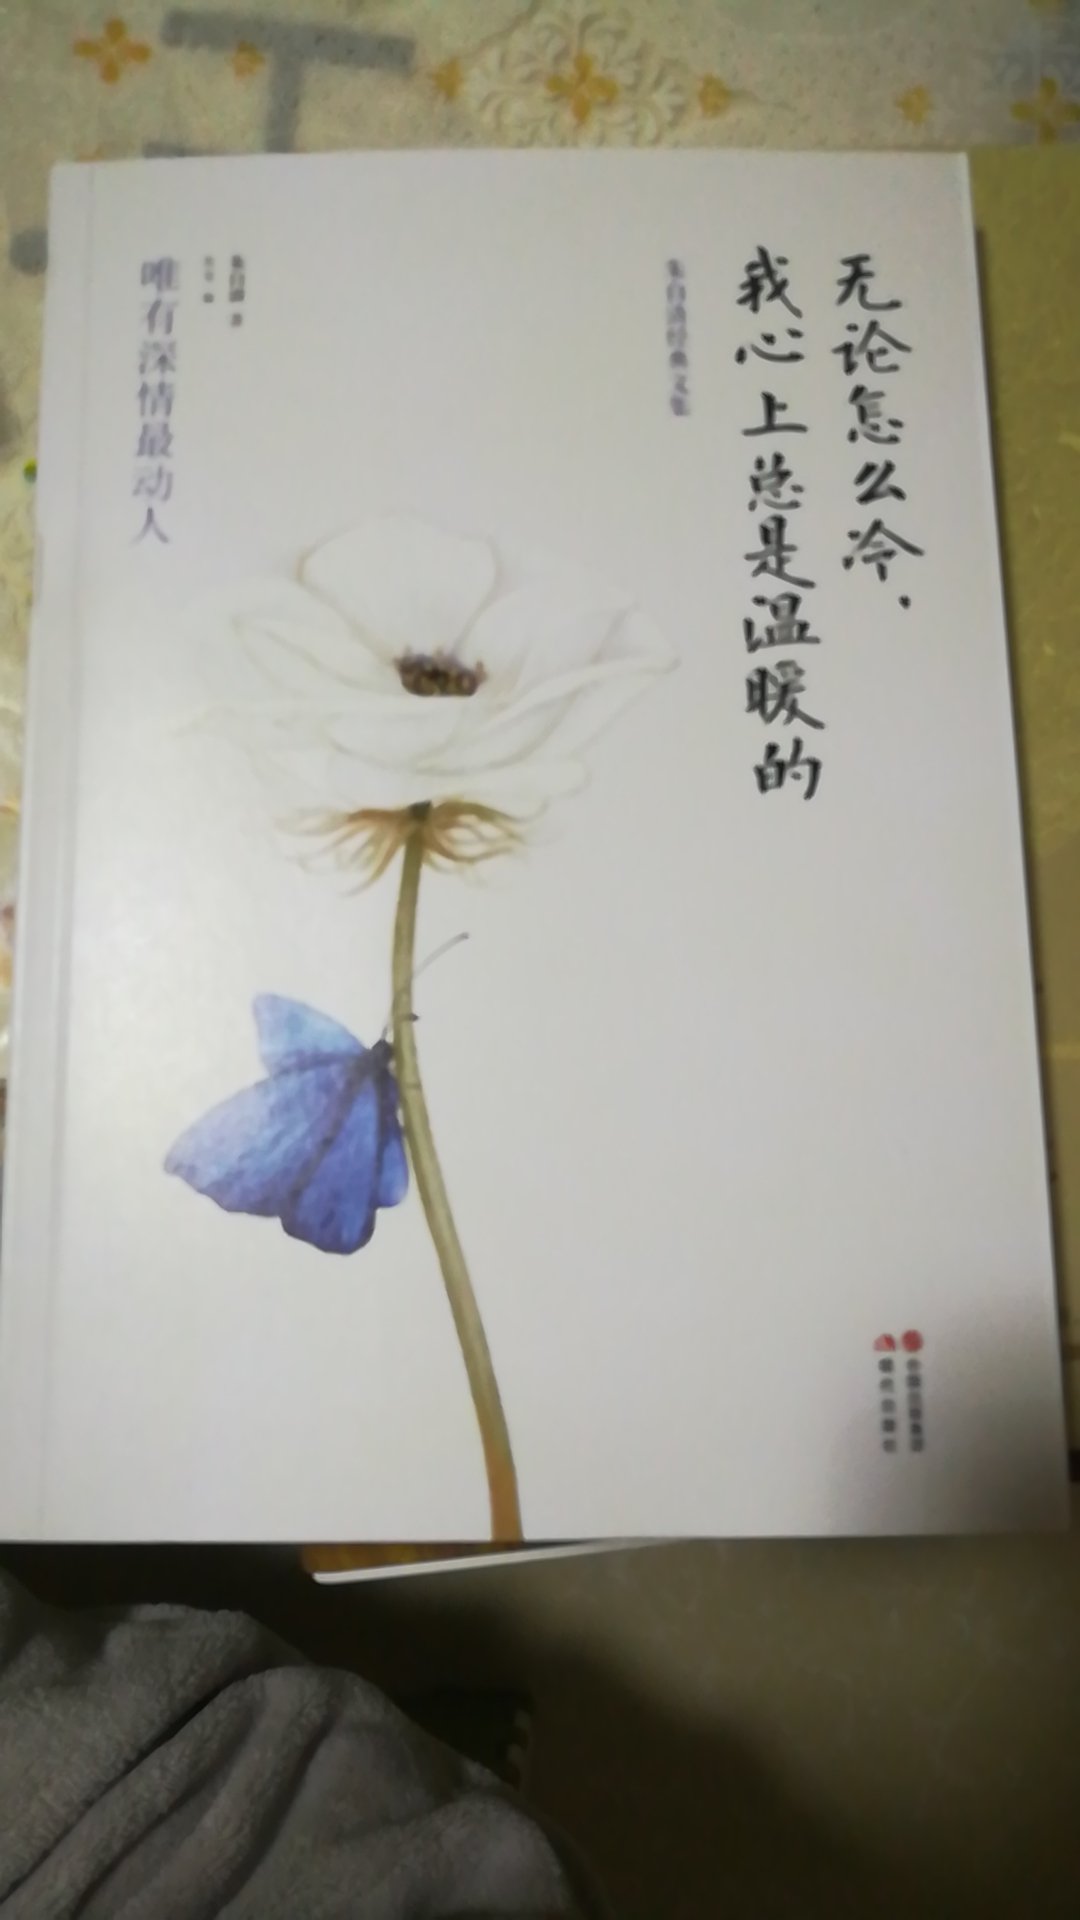 很喜欢朱自清先生的散文，这本书封面真的好美